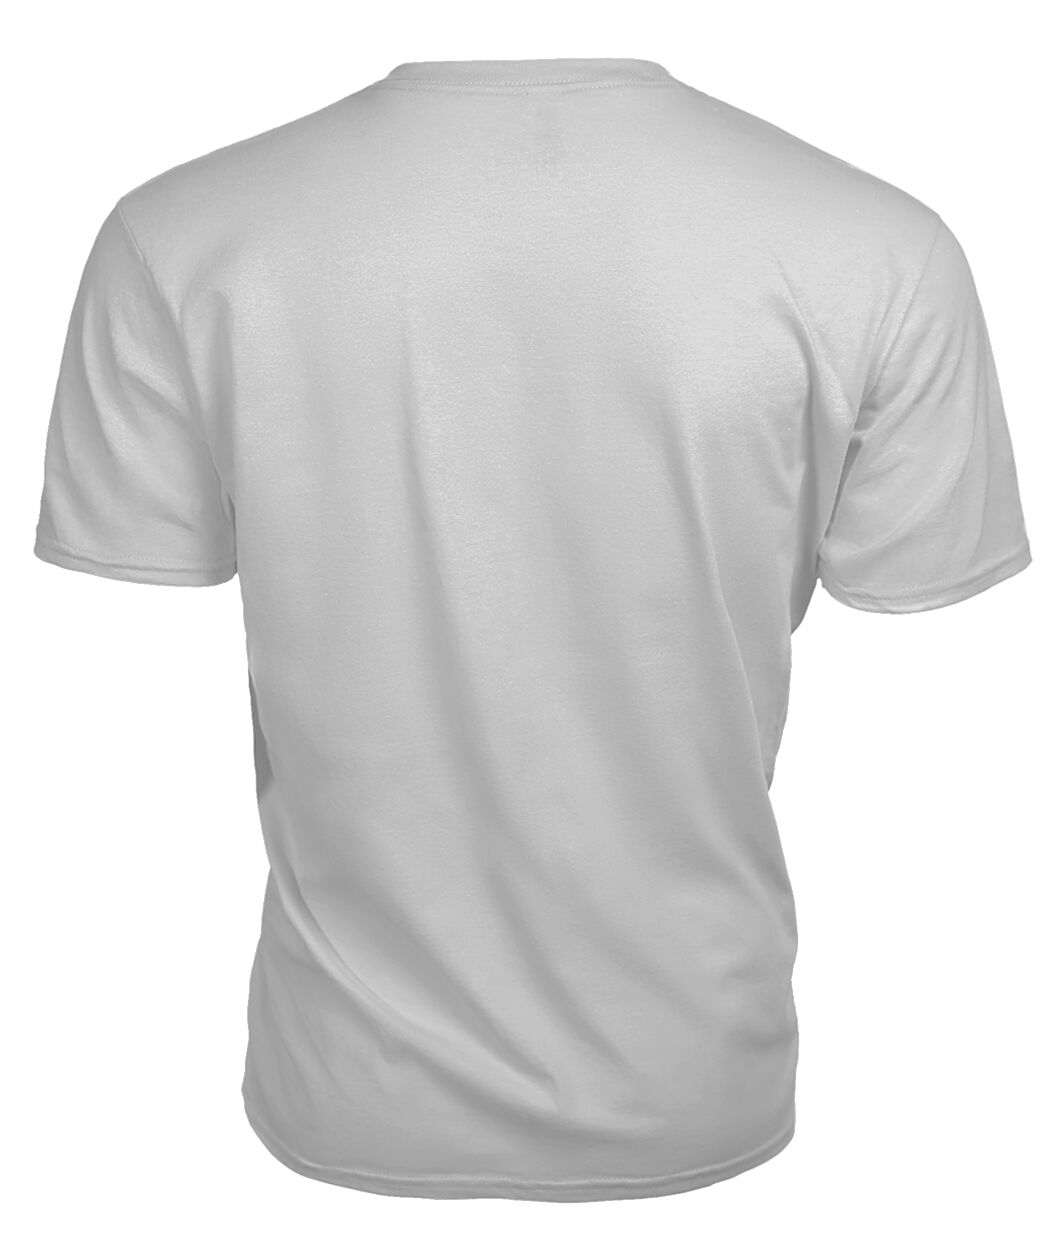 Bisset Family Tartan - 2D T-shirt